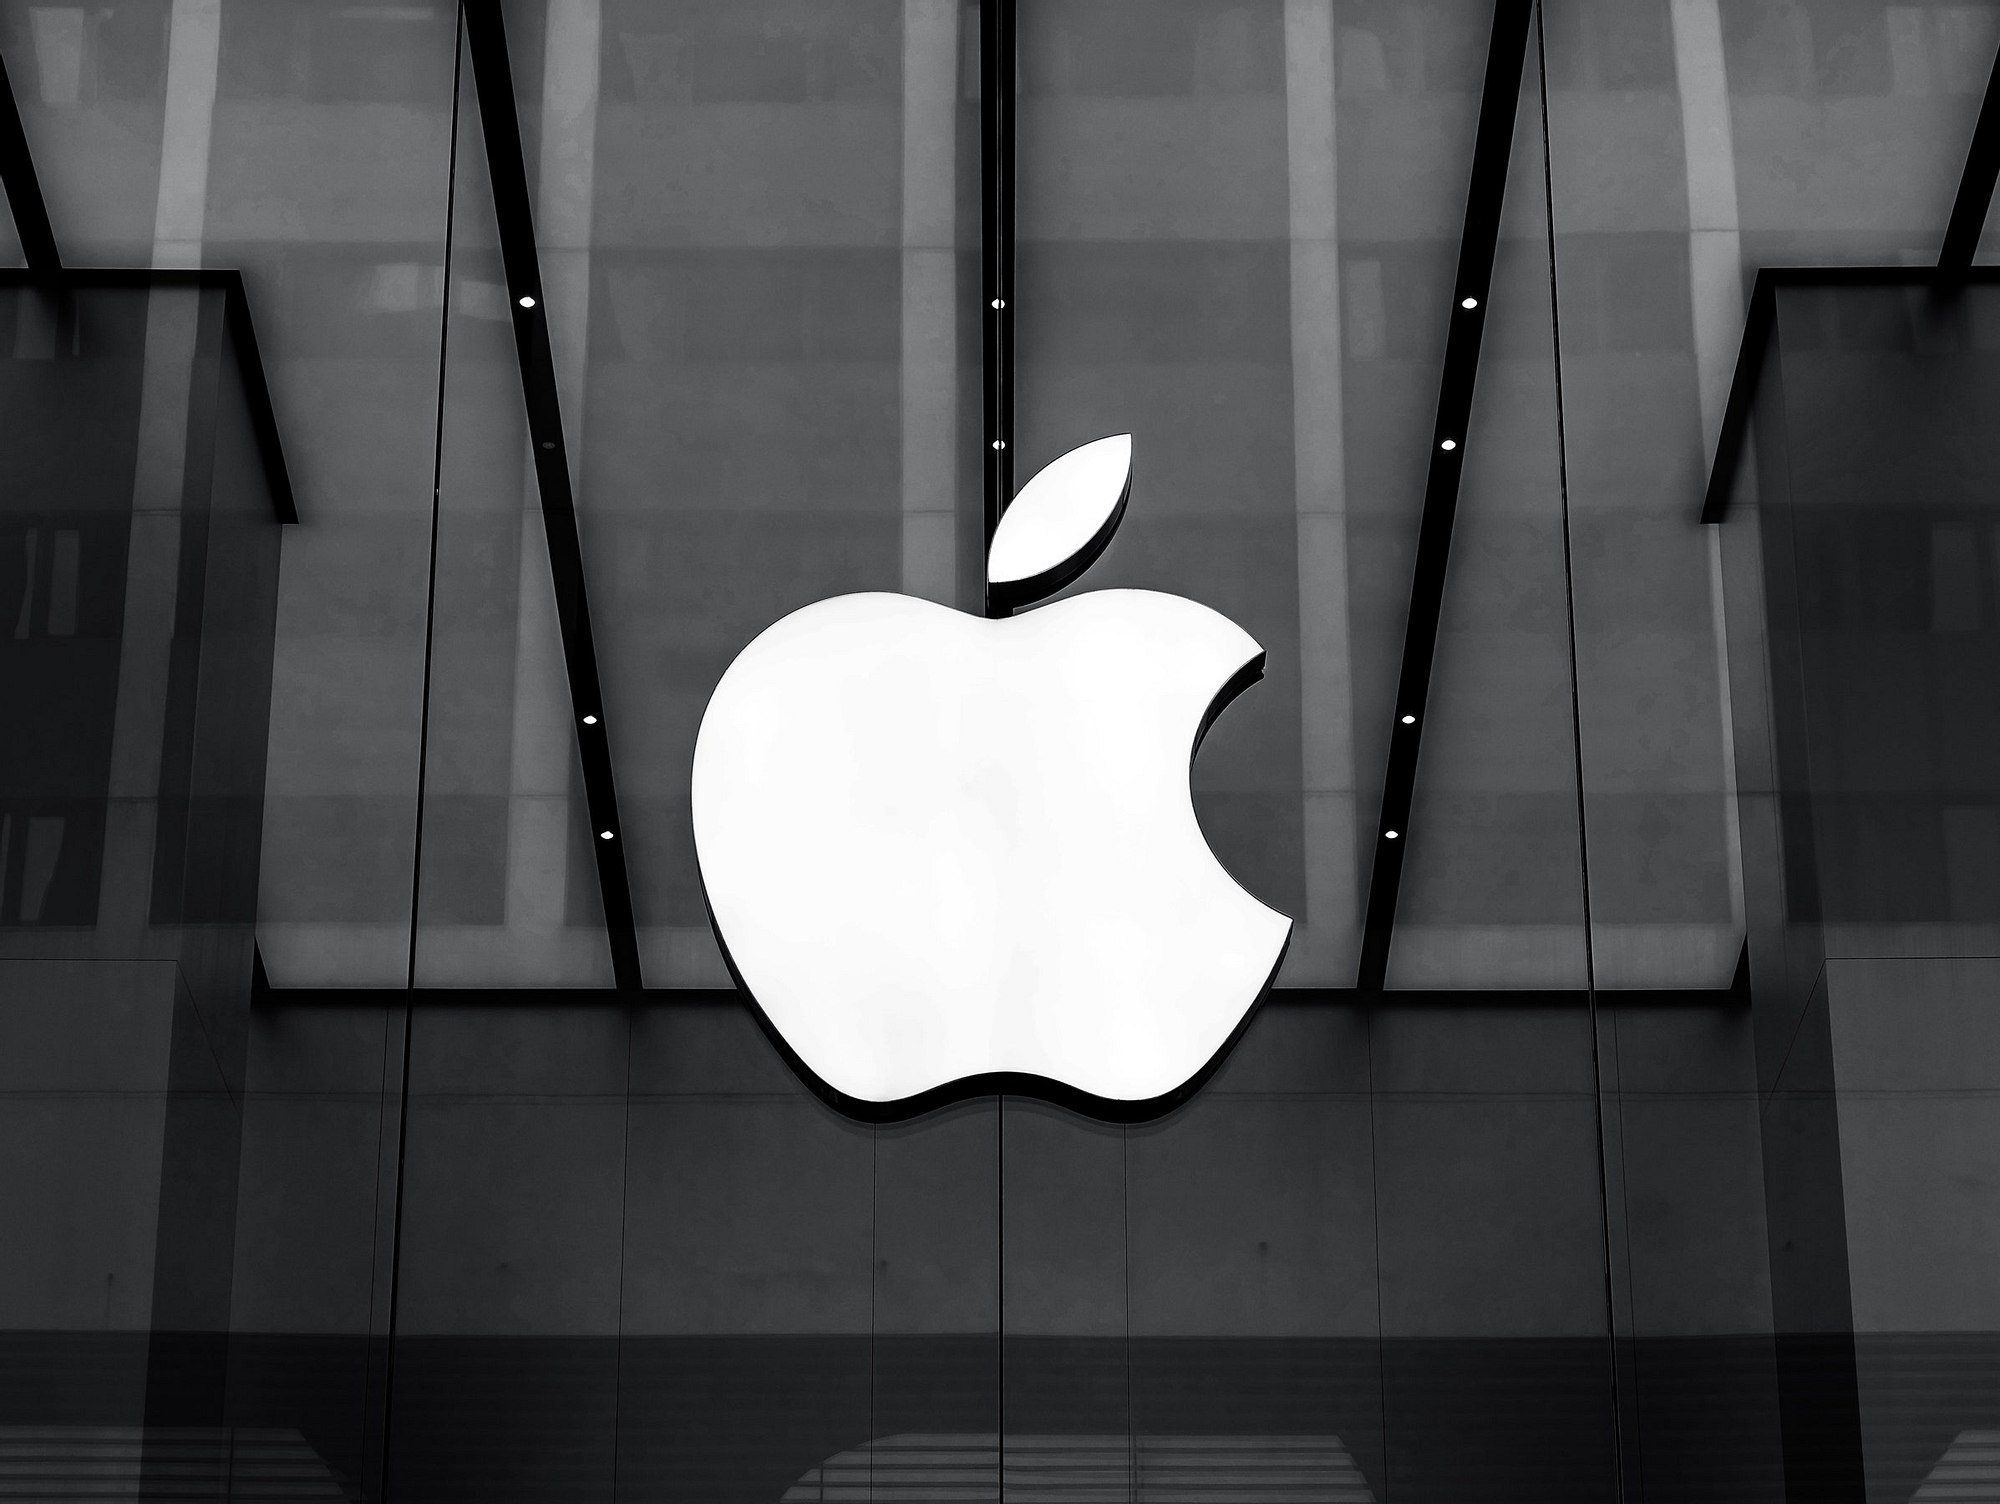 ФАС обязала Apple разрешить разработчикам указывать альтернативные способы оплаты в приложениях